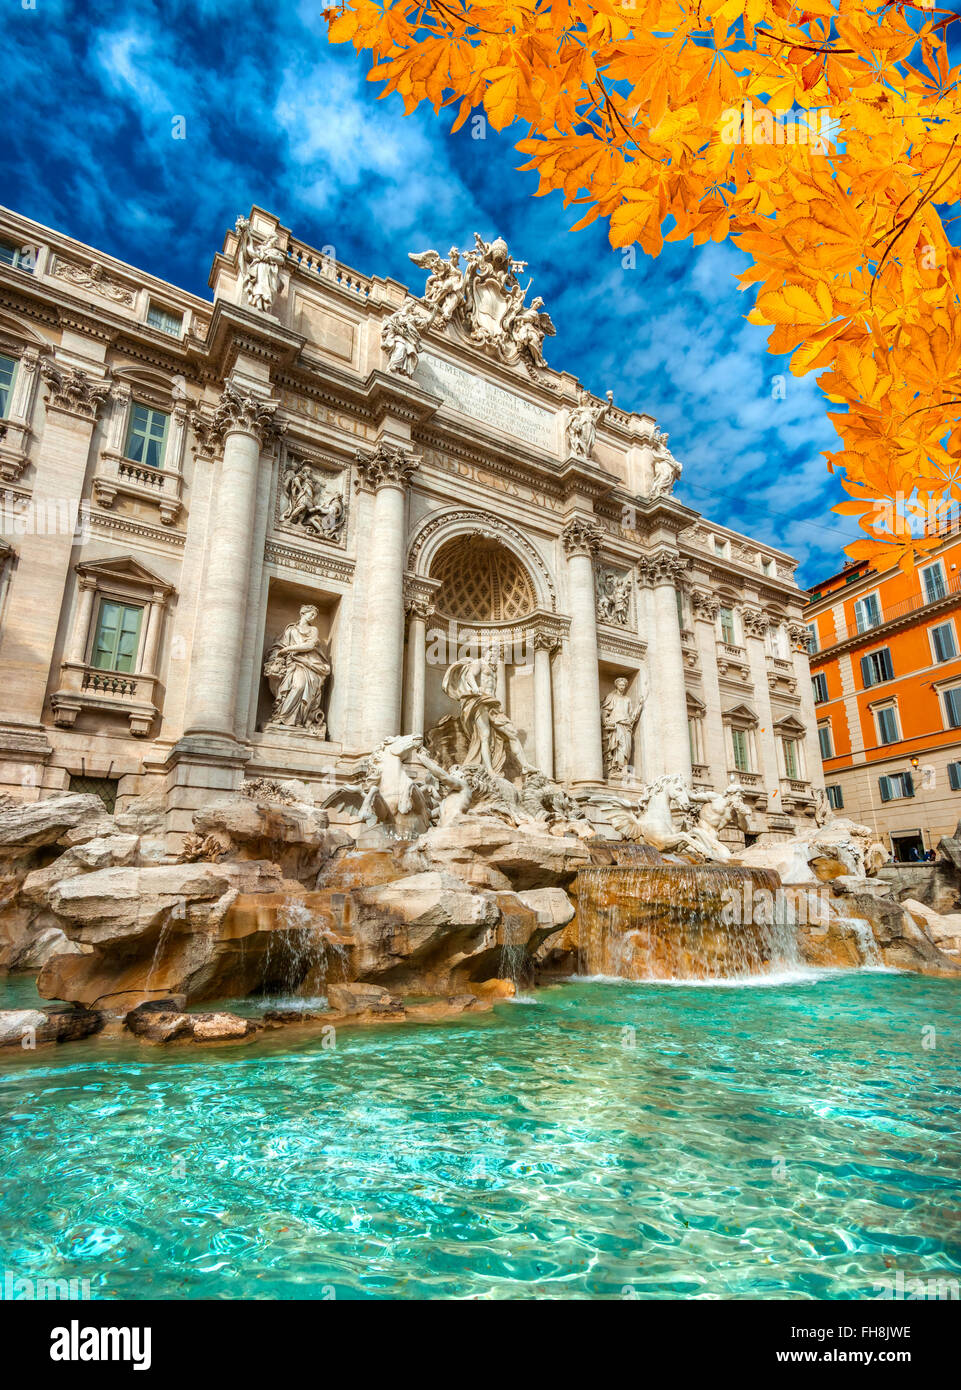 Rome, Trevi Fountain. Italy. Stock Photo